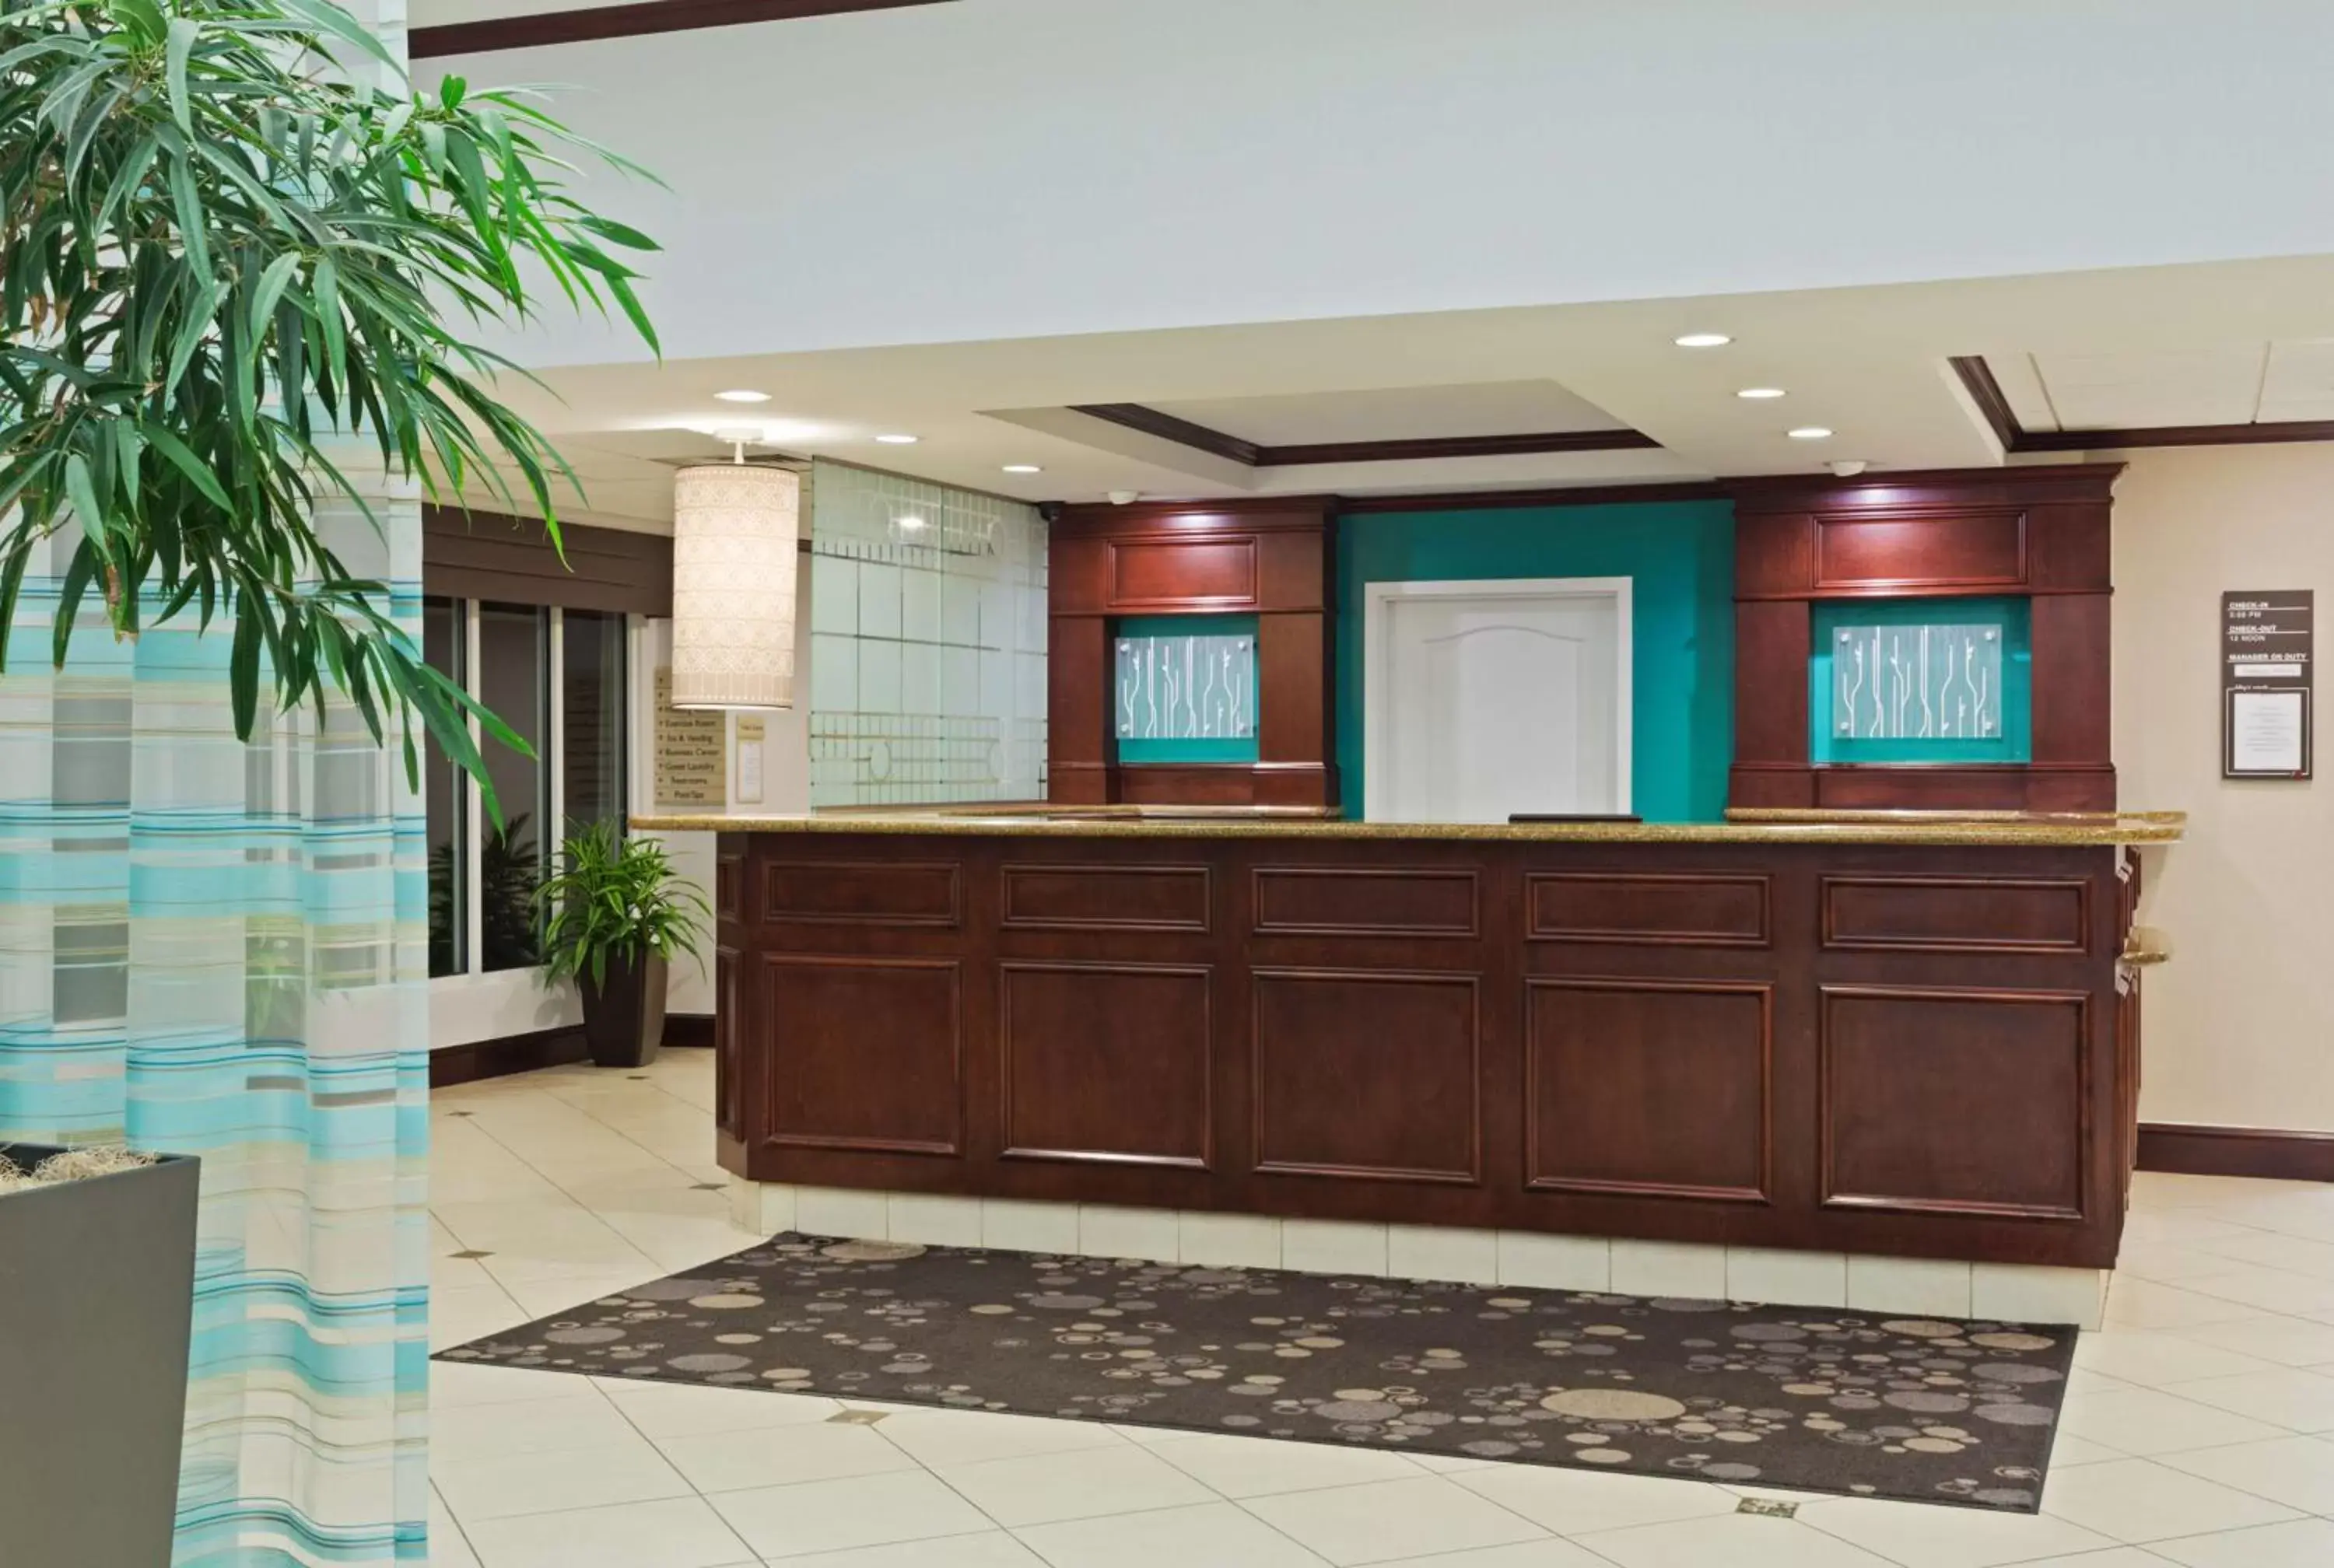 Lobby or reception, Lobby/Reception in Hilton Garden Inn Annapolis